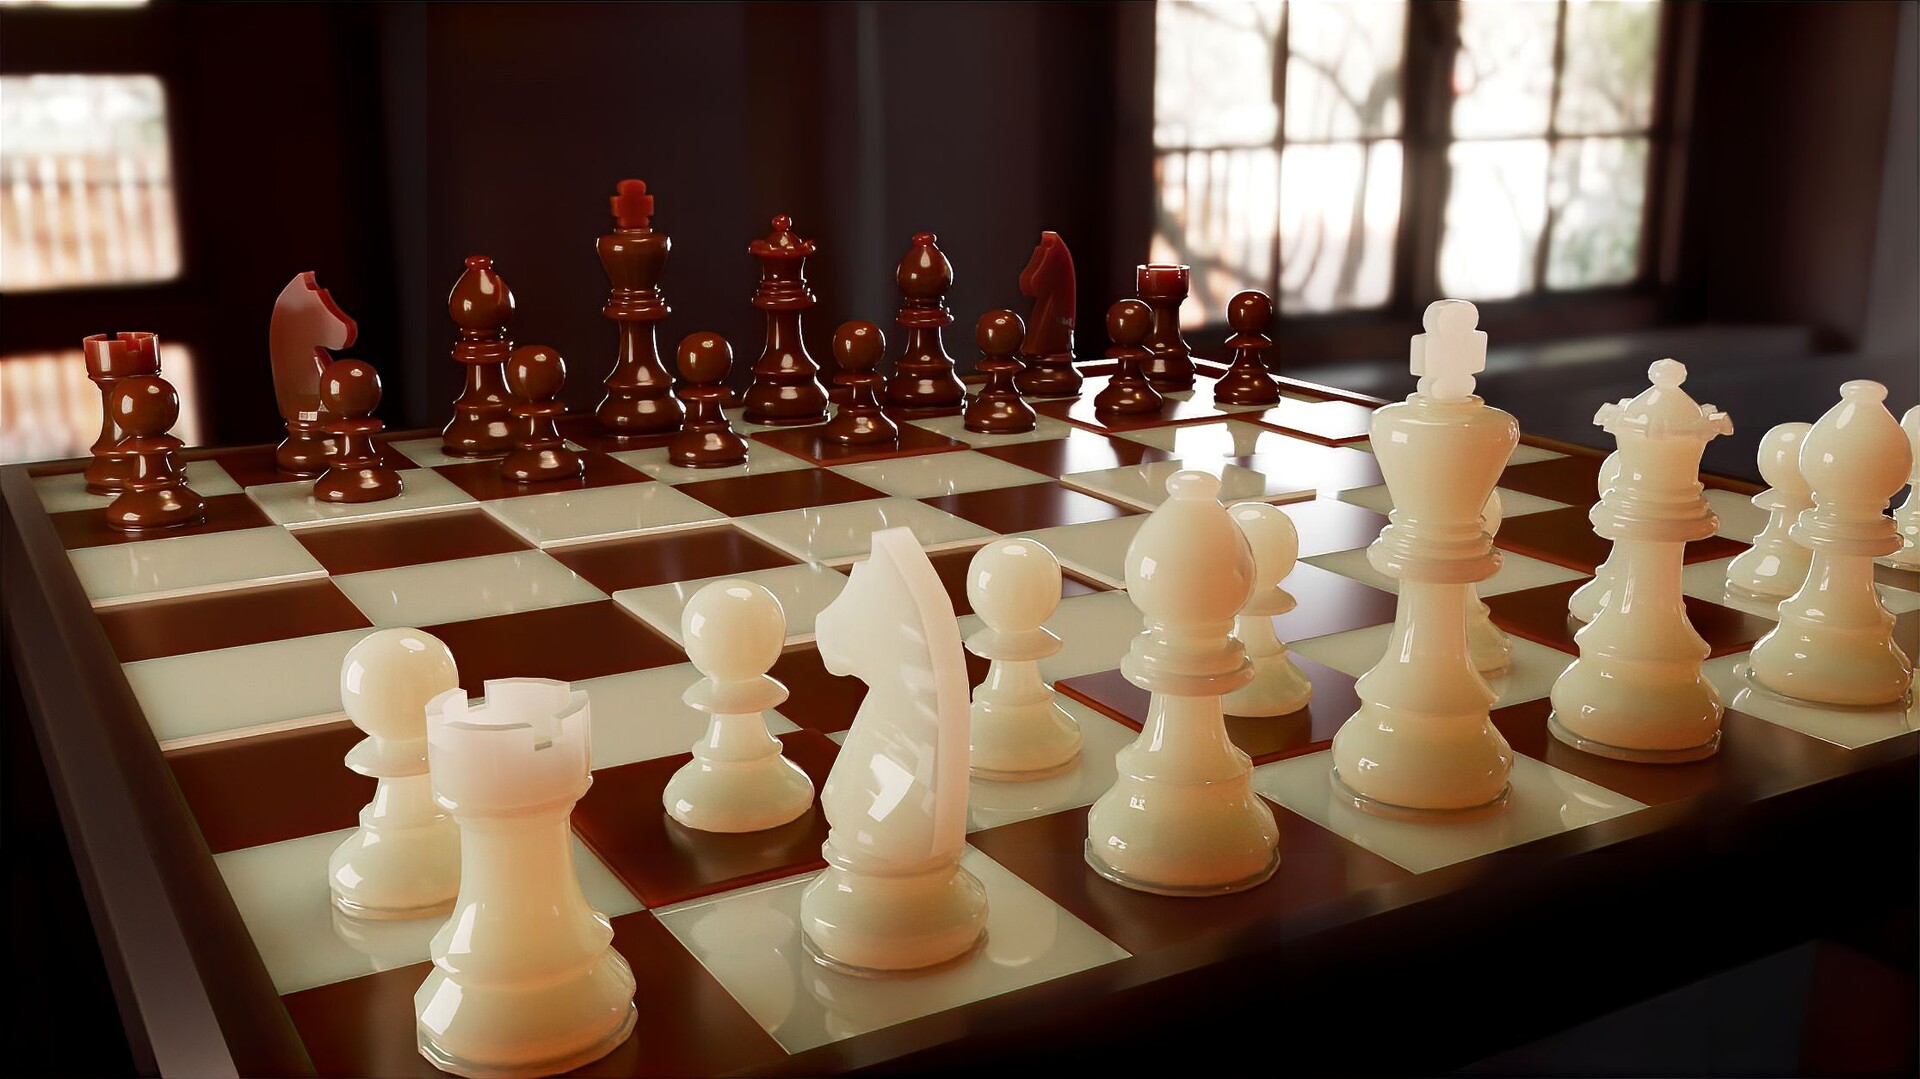 ArtStation - chess Set 3D model